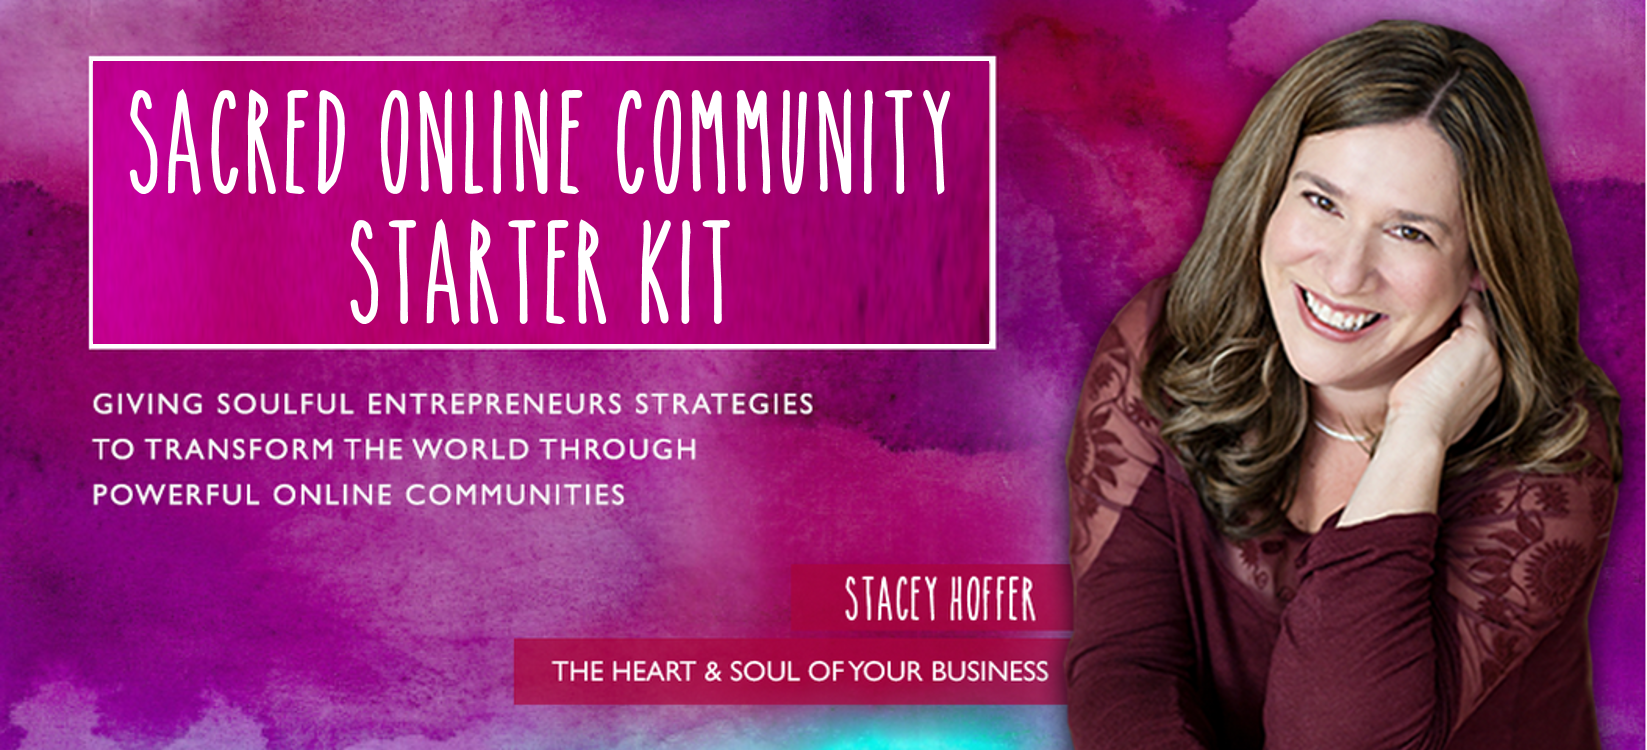 Sacred Online Community Starter Kit